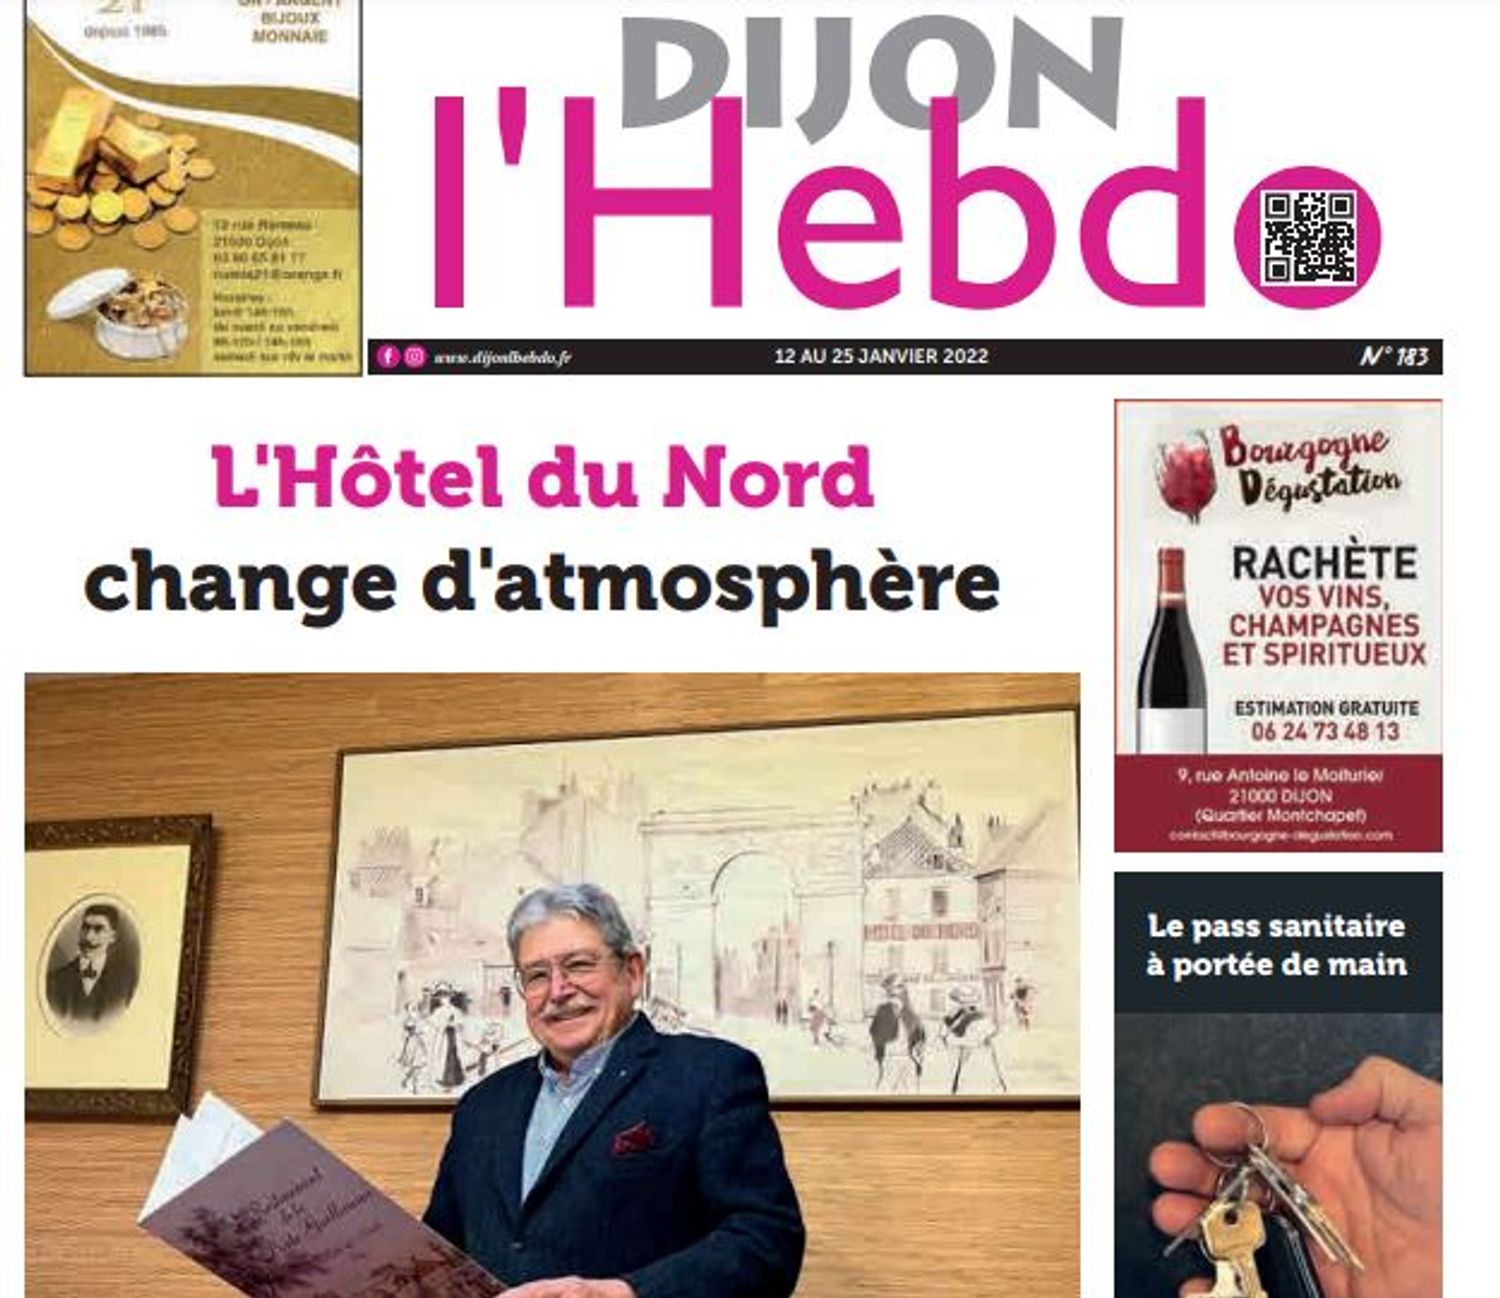 Le nouveau numéro de Dijon l'hebdo a été publié ce mercredi 